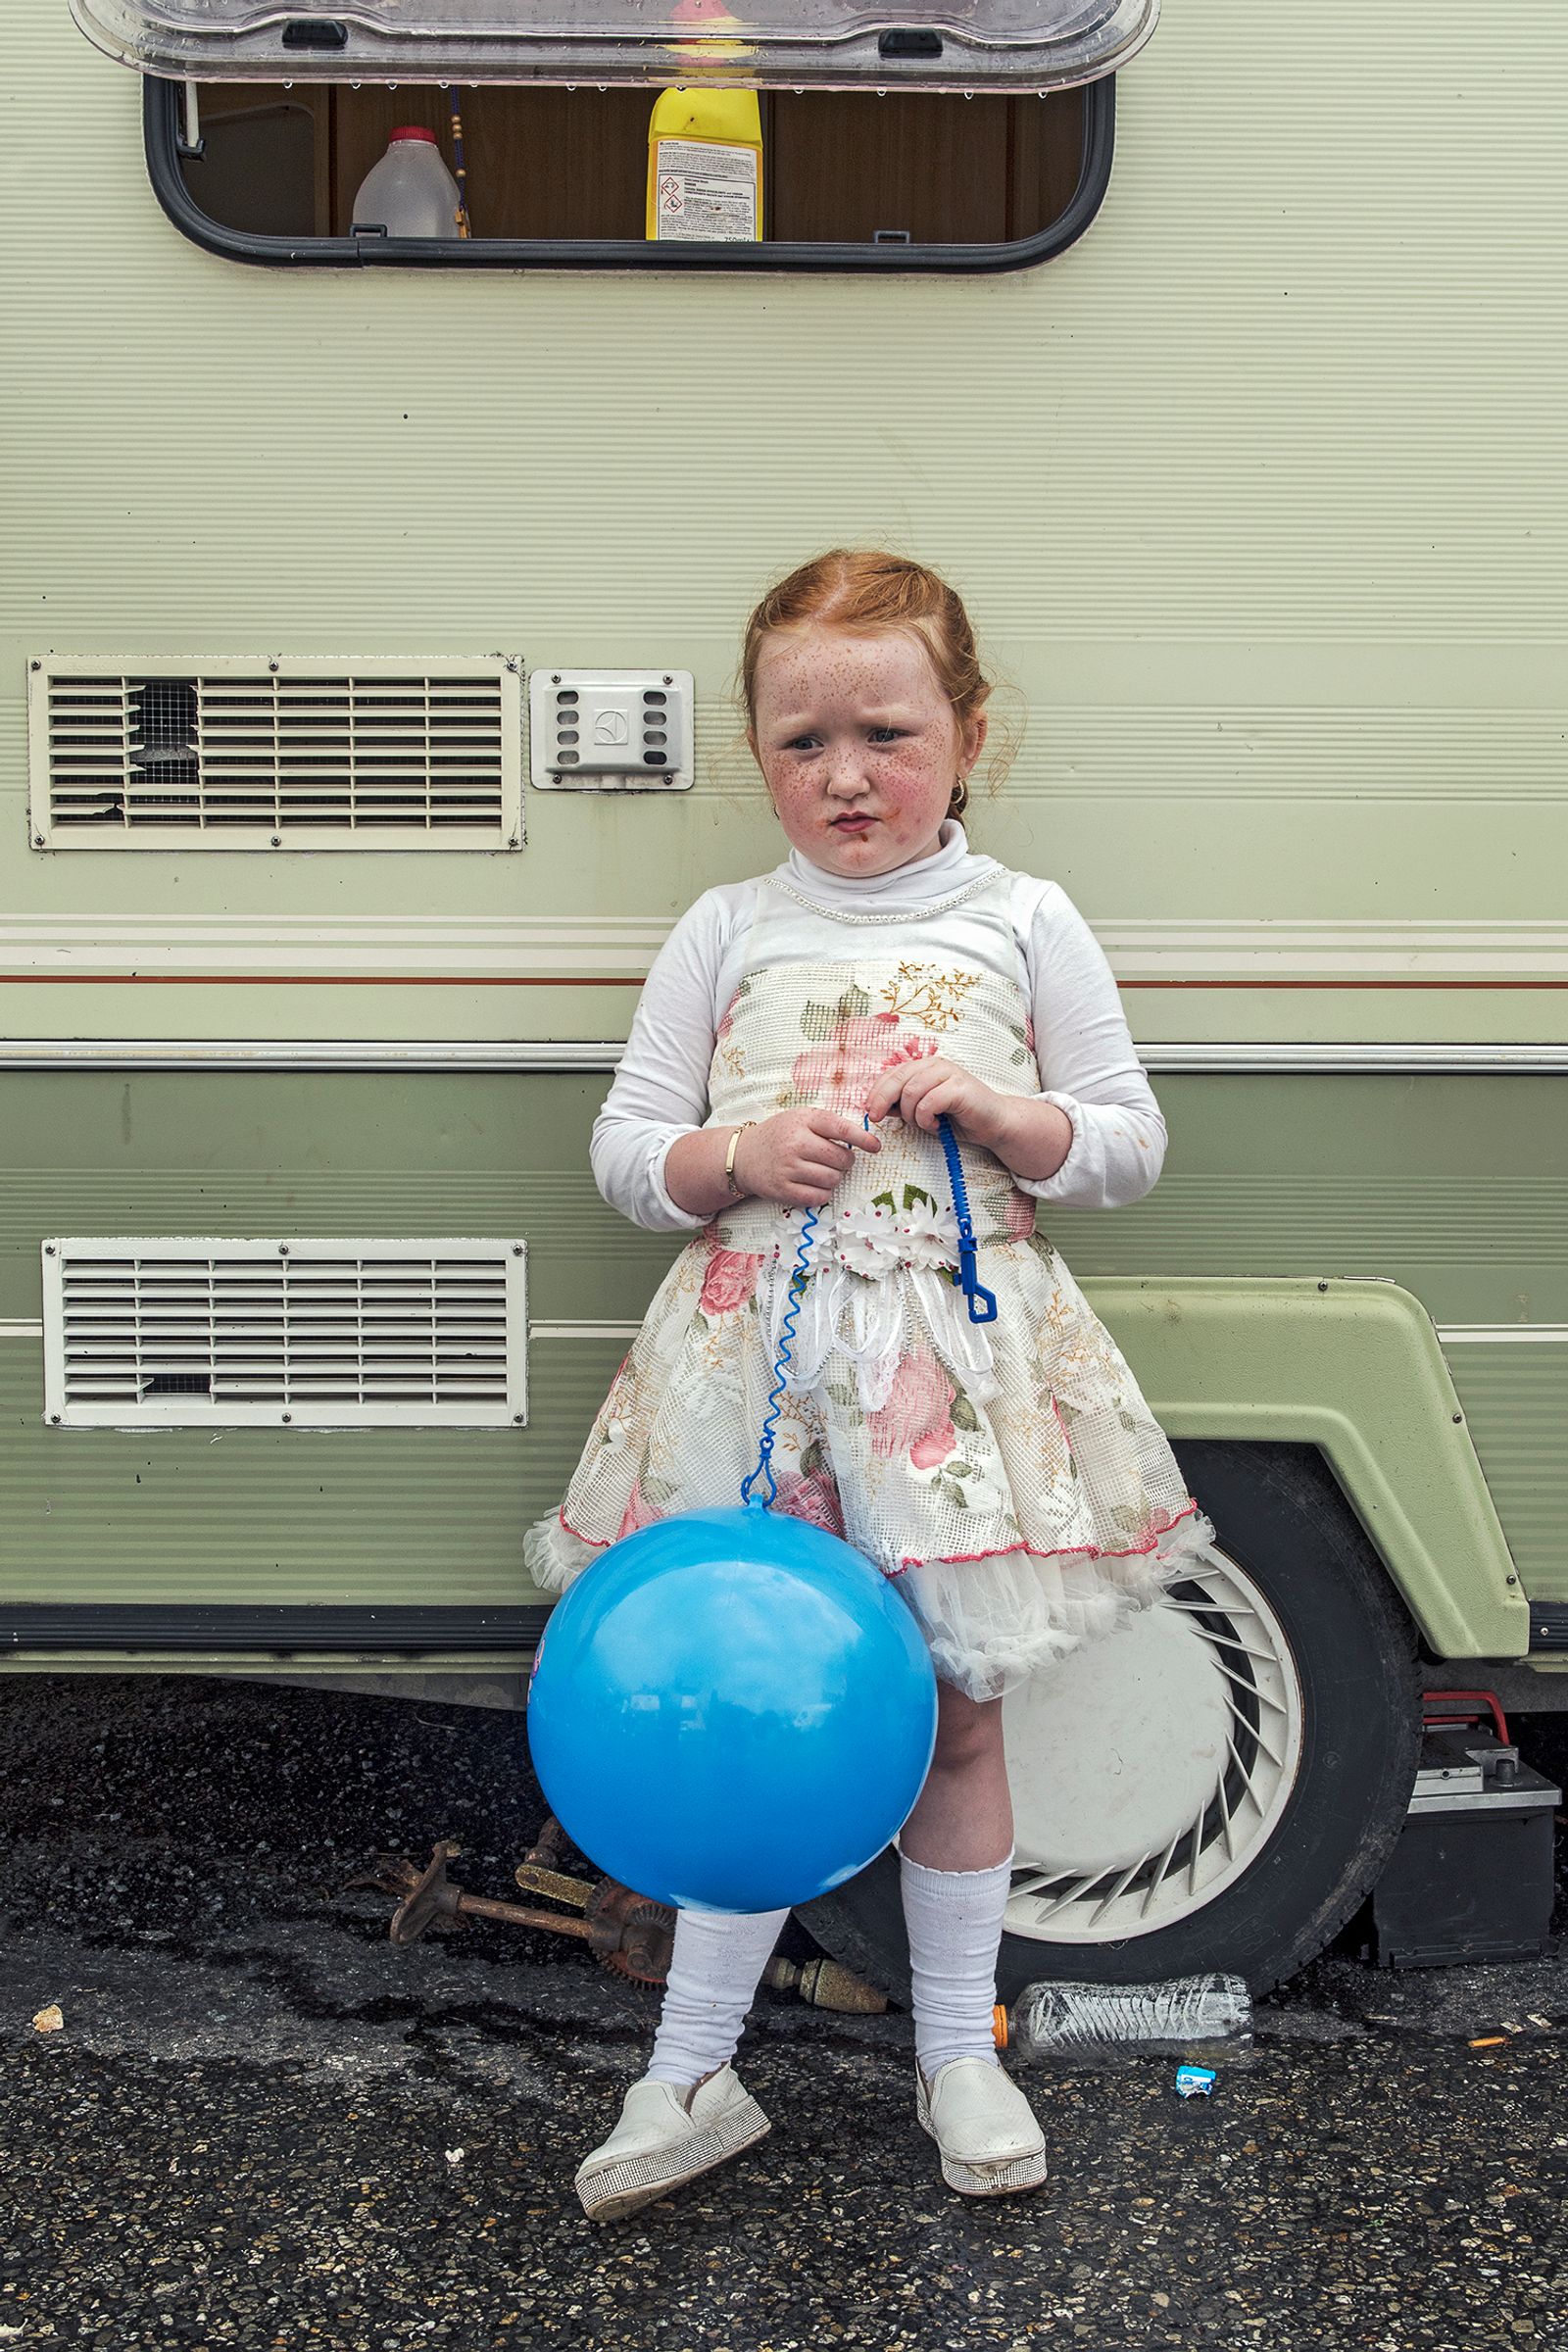 © Joseph-Philippe Bevillard - Blue Balloon, Carlow, Ireland 2019